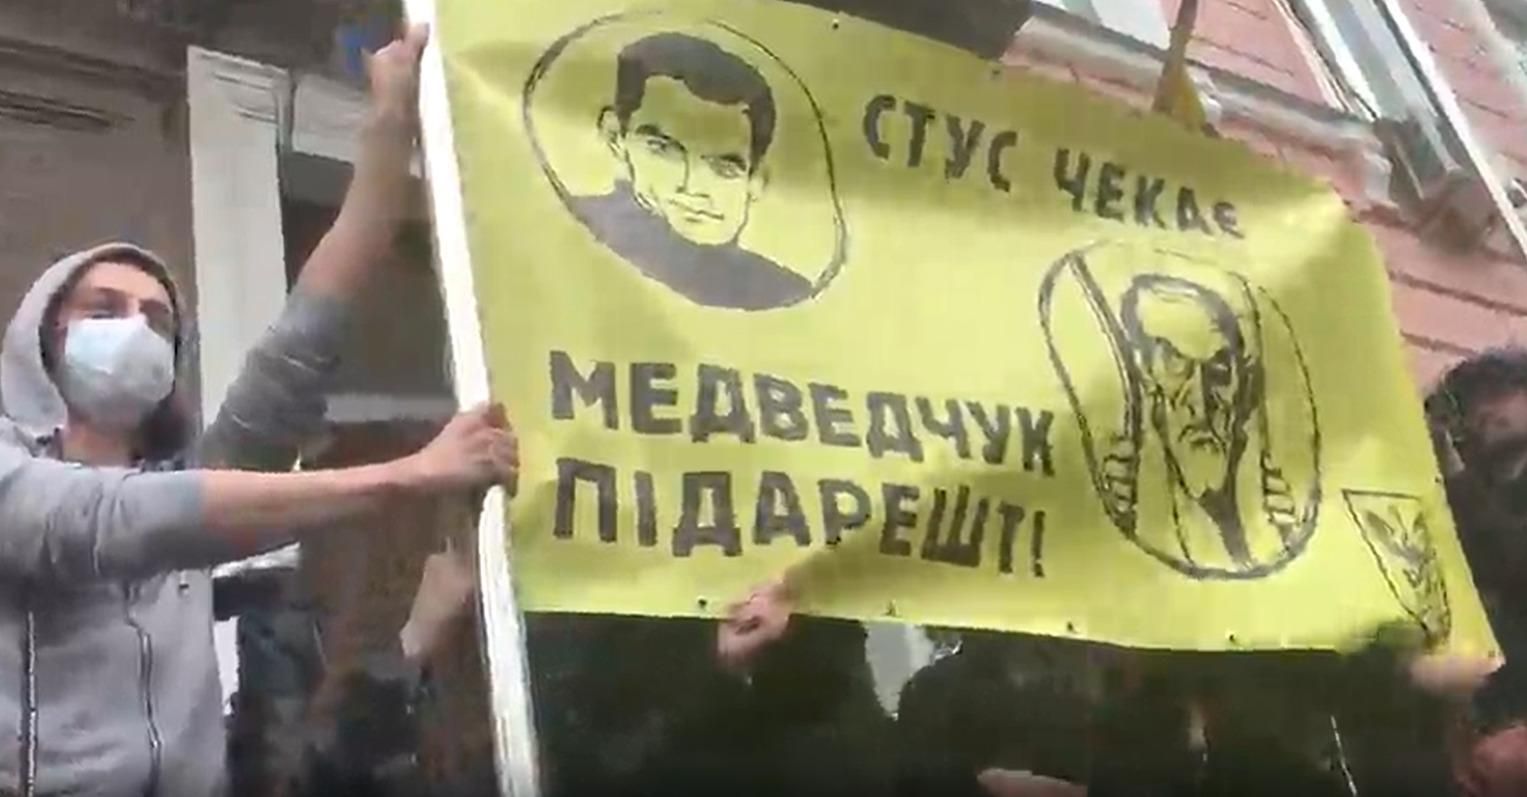 Медведчука підарешт: біля суду сталася сутичка через плакат